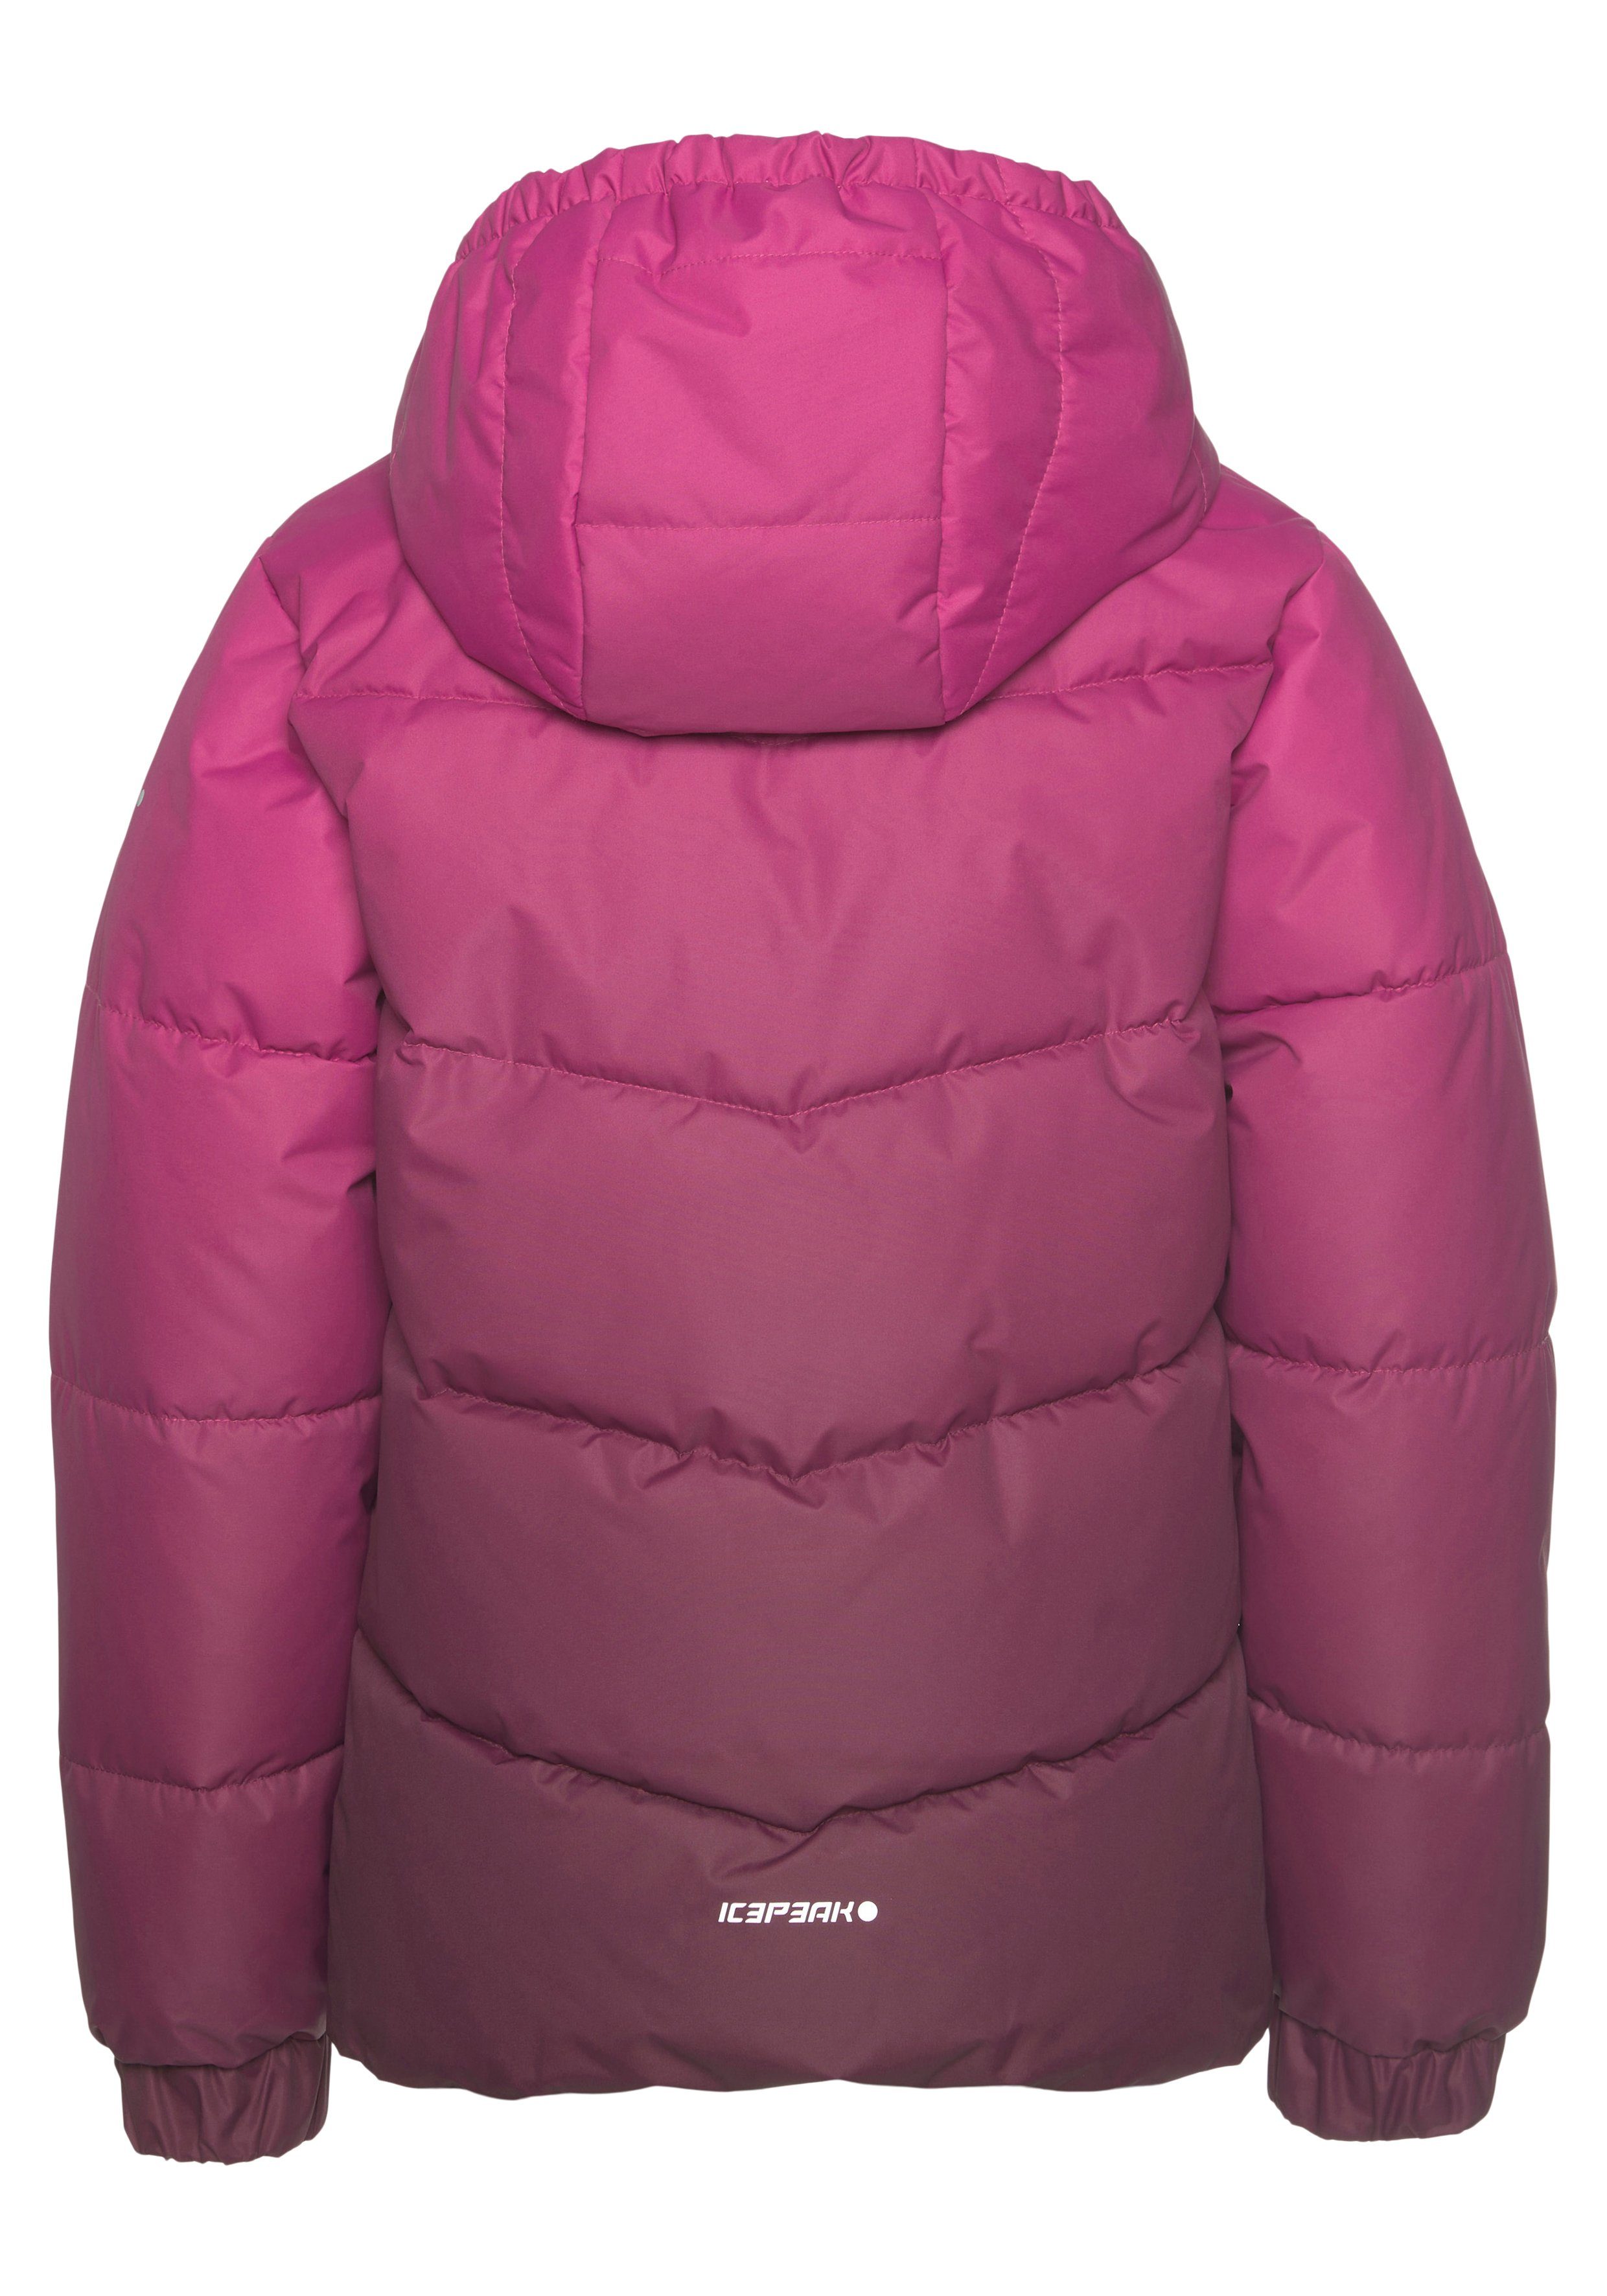 Icepeak & für Windabweisend Kinder pink - Steppjacke & Atmungsaktiv PIQEON Wasserabweisend JR